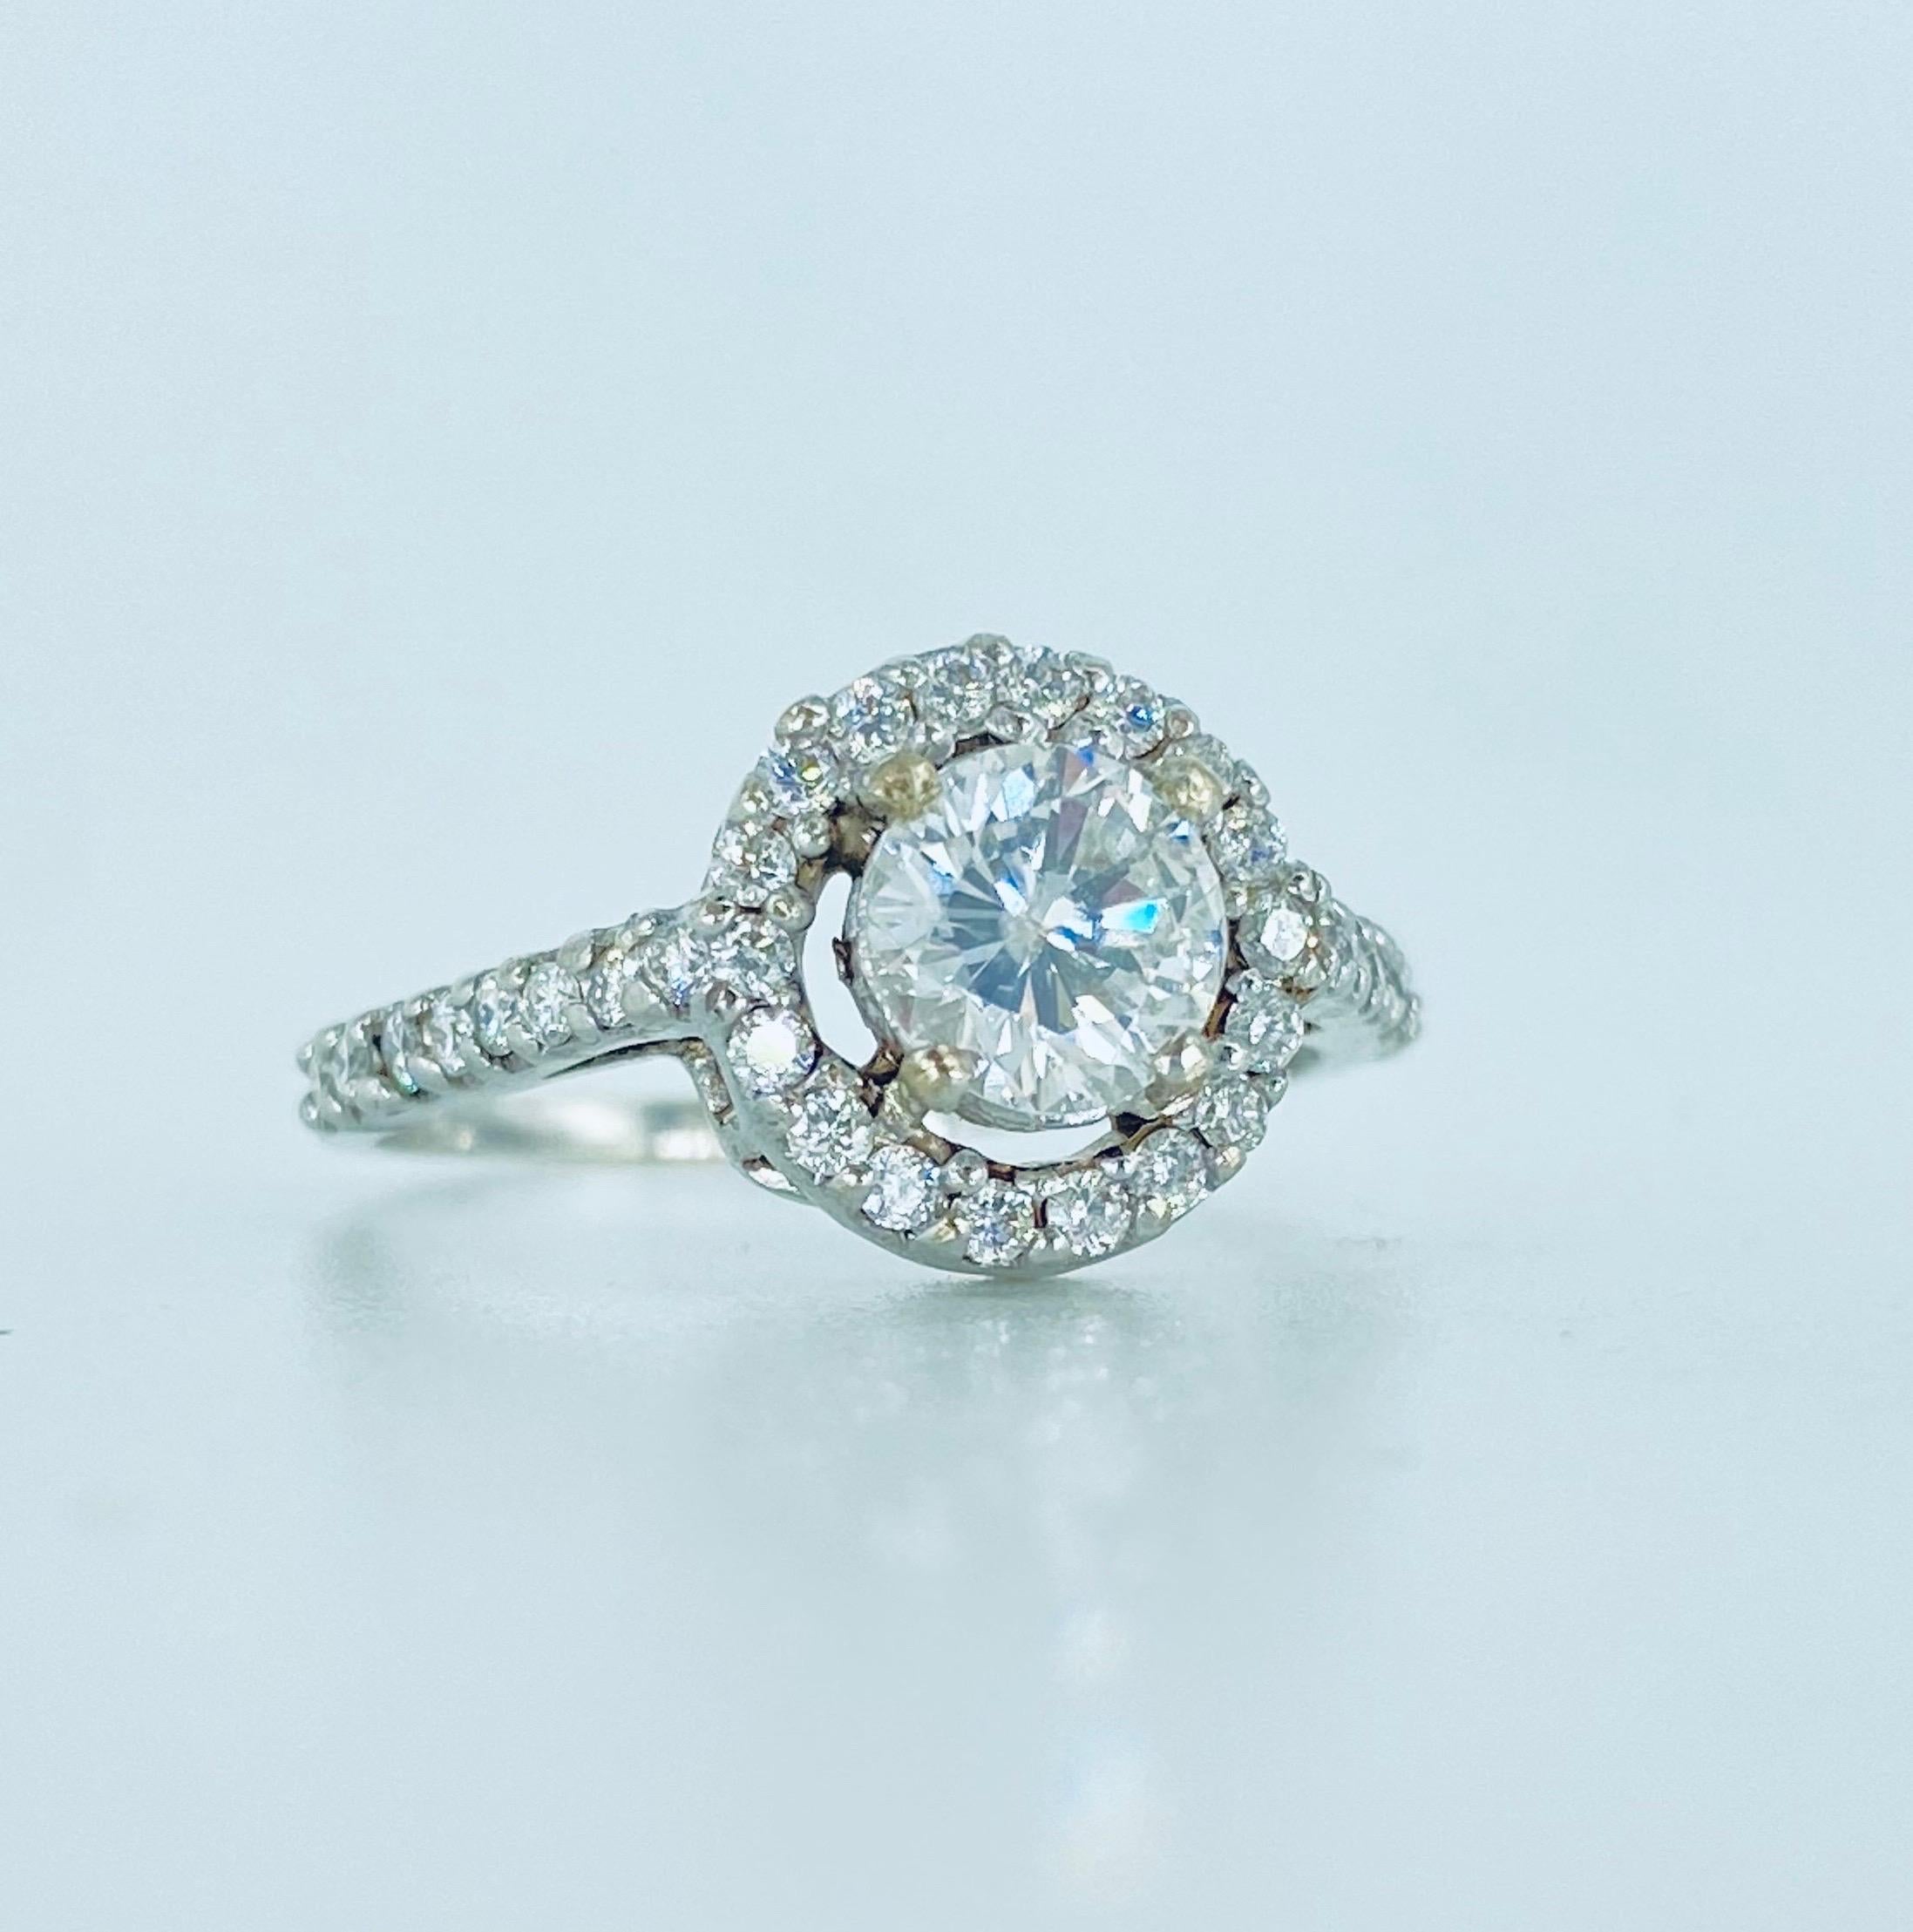 Bague de fiançailles Halo en or blanc 18k certifiée par le GIA avec 1,34 carat de diamants. Le diamant central est certifié GIA et pèse 0,66 carat E/I2. Il est entouré d'environ 0,68 carat de diamants ronds. L'anneau pèse 2,4 grammes et est fabriqué